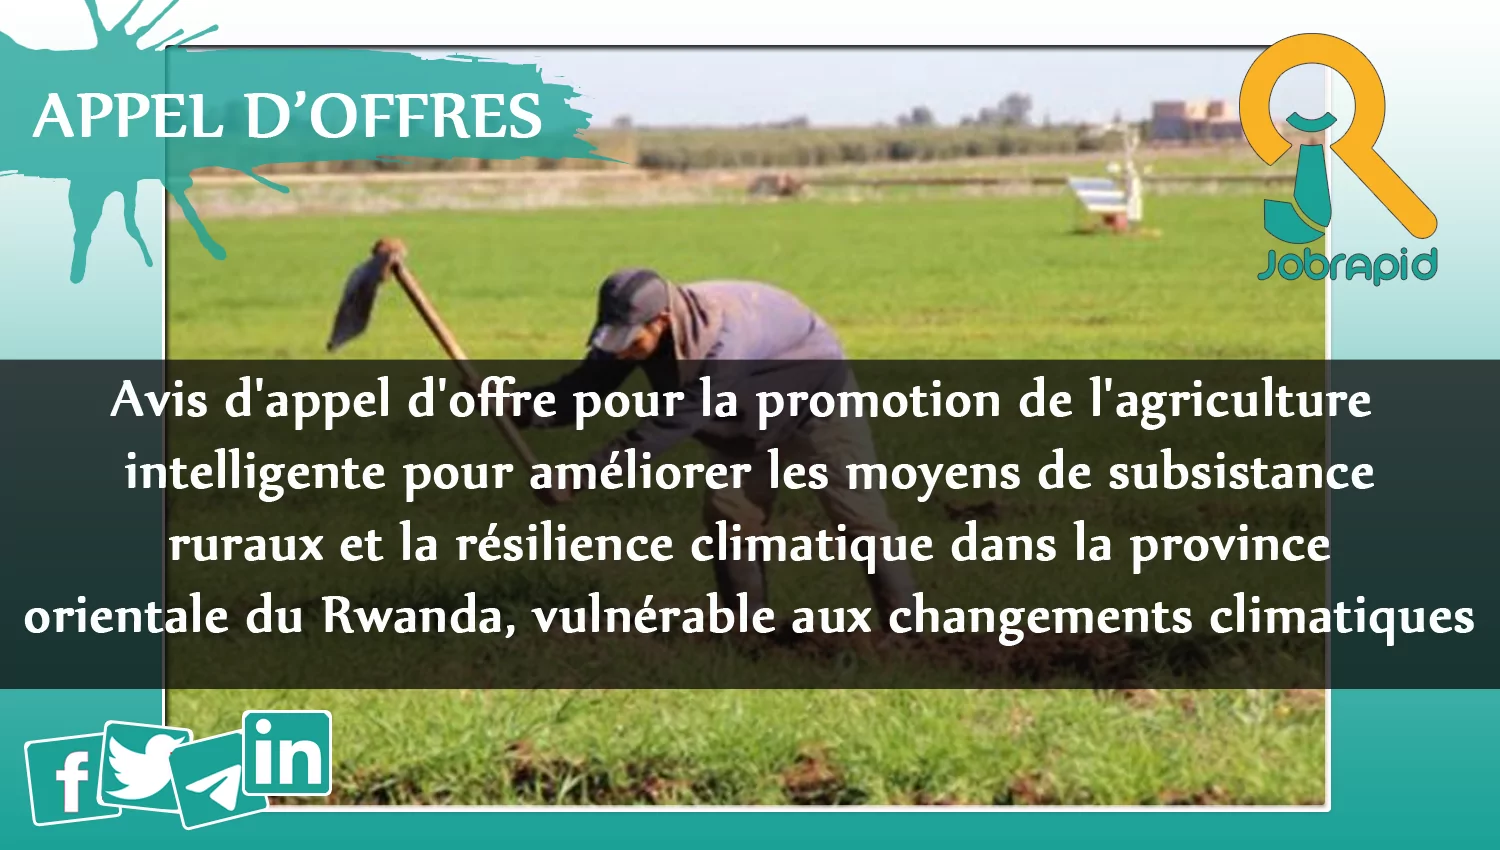 Avis d’appel d’offre pour la promotion de l’agriculture intelligente pour améliorer les moyens de subsistance ruraux et la résilience climatique dans la province orientale du Rwanda, vulnérable aux changements climatiques